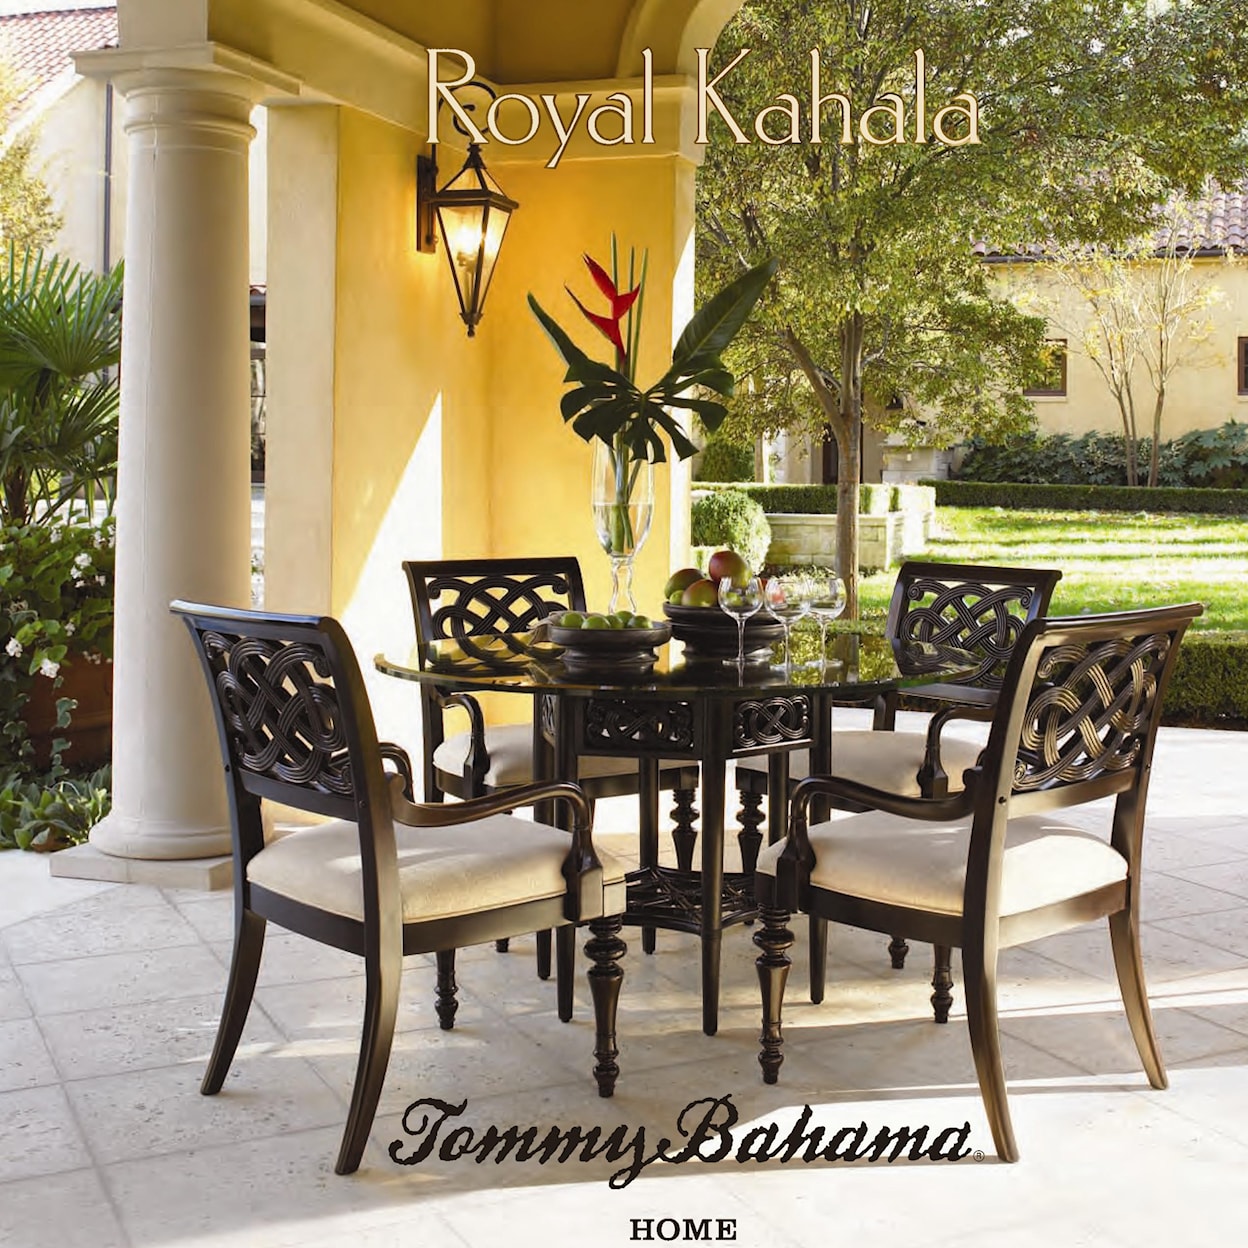 Tommy Bahama Home Royal Kahala 54" Sugar and Lace Table